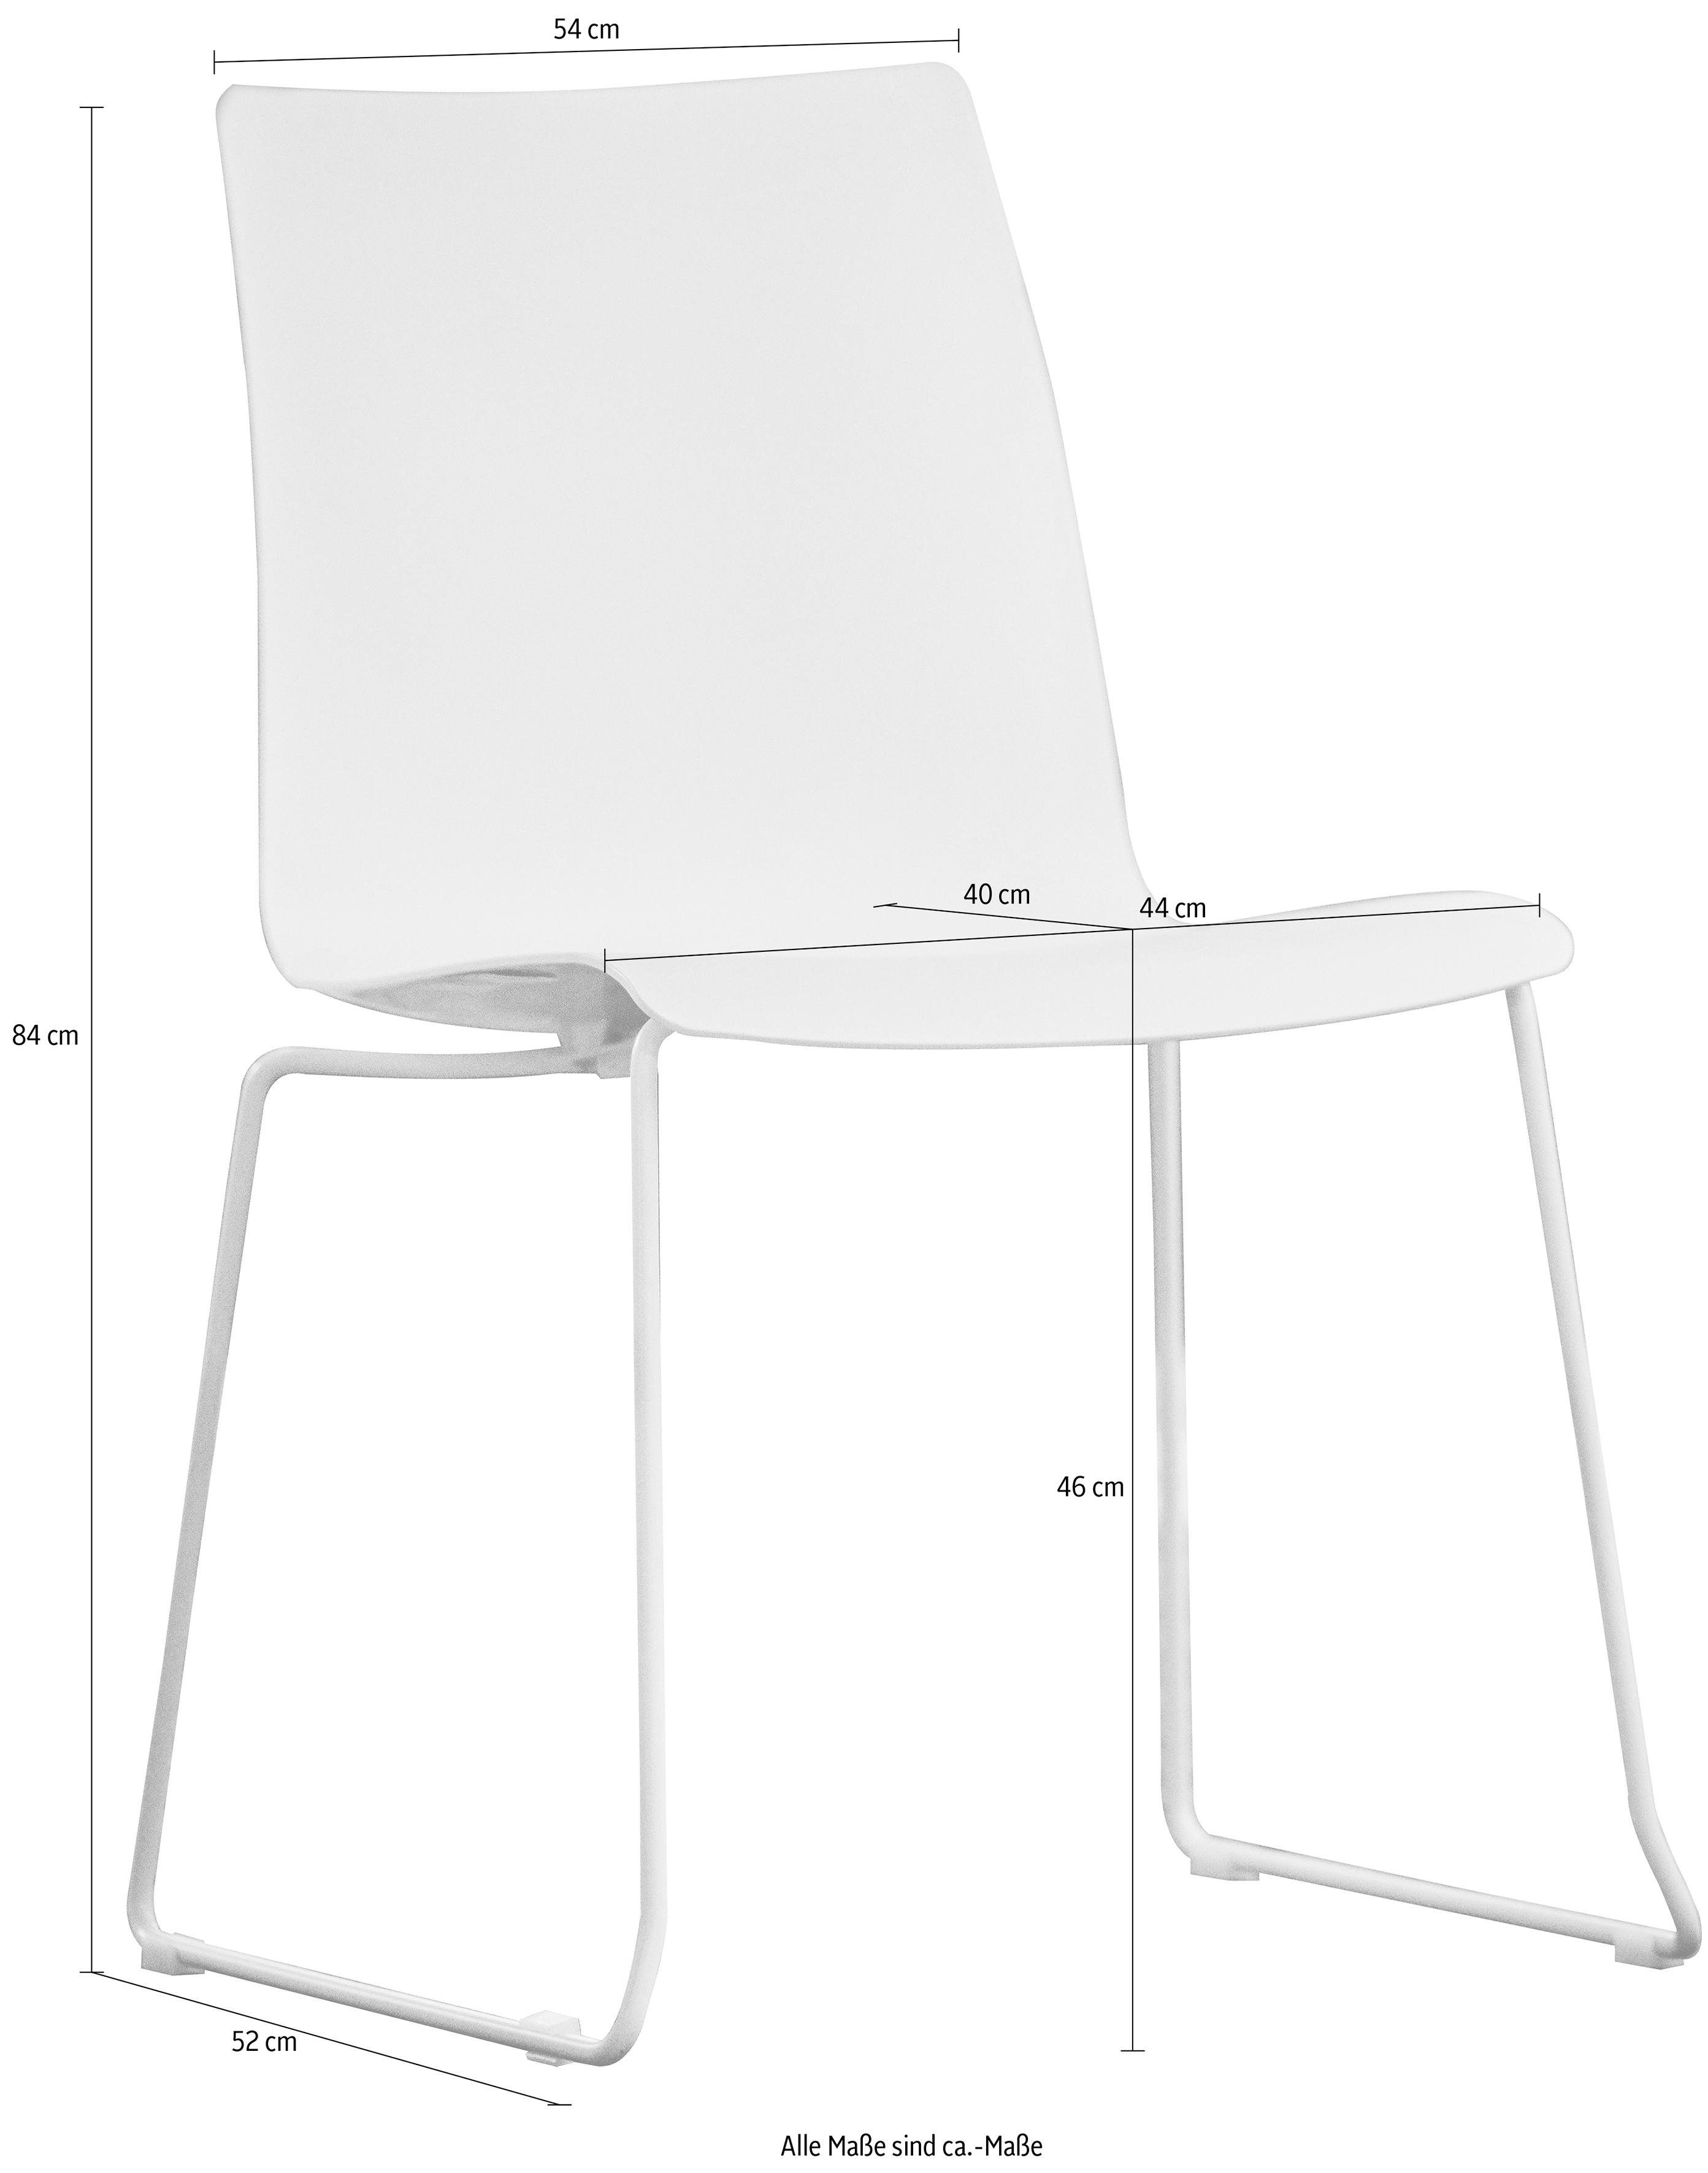 jankurtz Stuhl slide, Sitzschale aus Kunsstoff, stapelbar, in 3 Farben weiß | chromfarben | Stühle